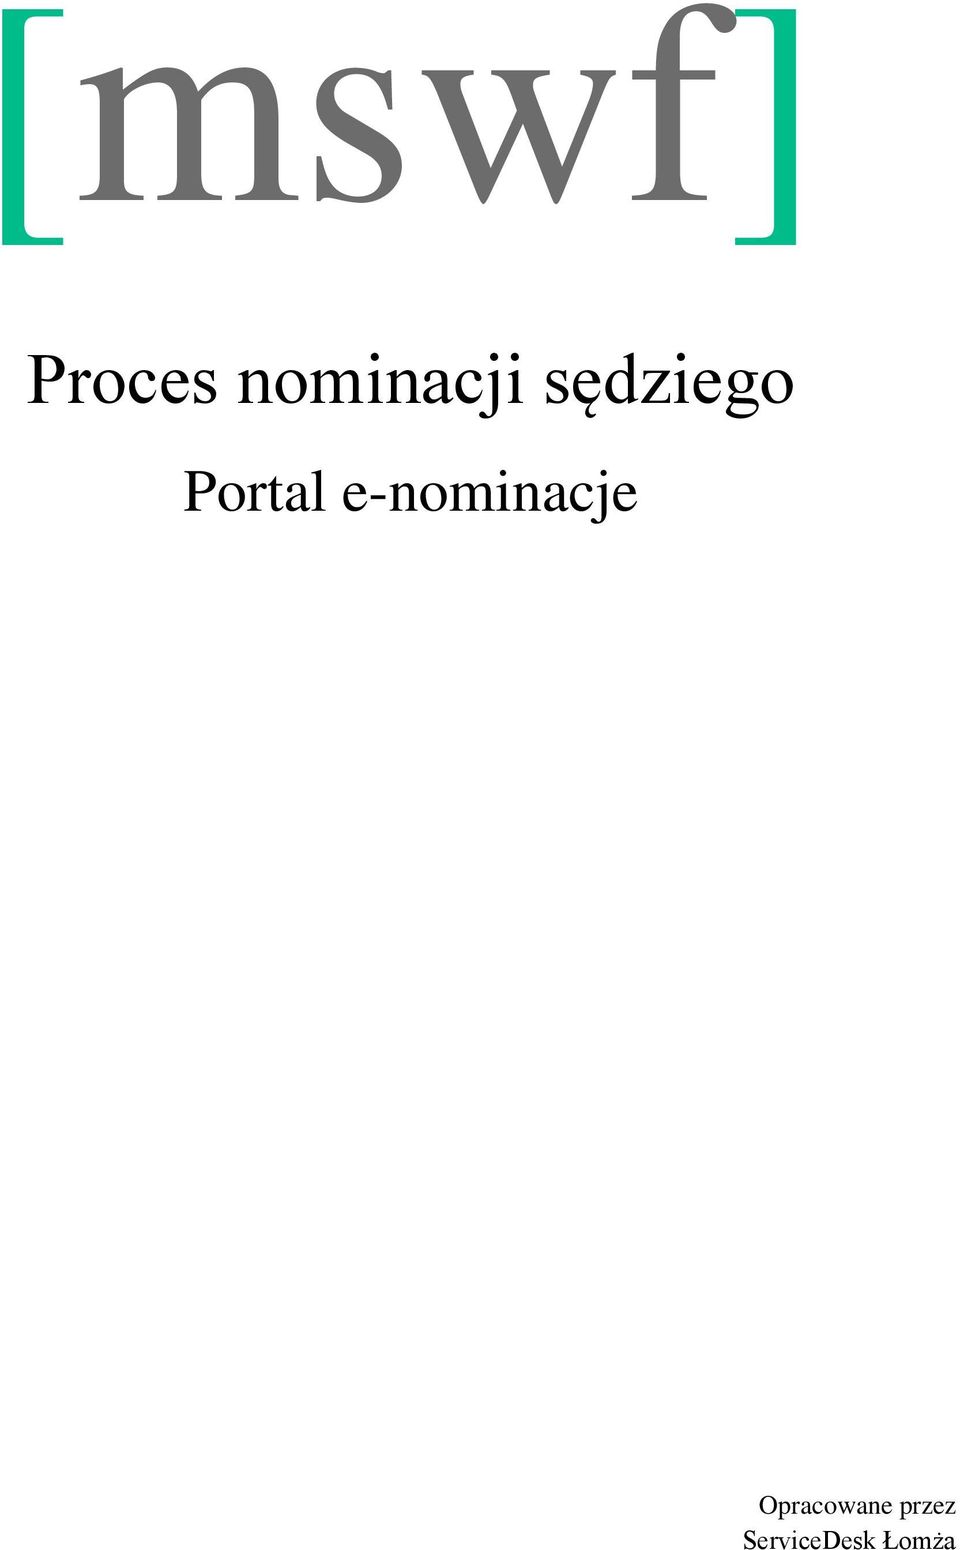 Portal e-nominacje